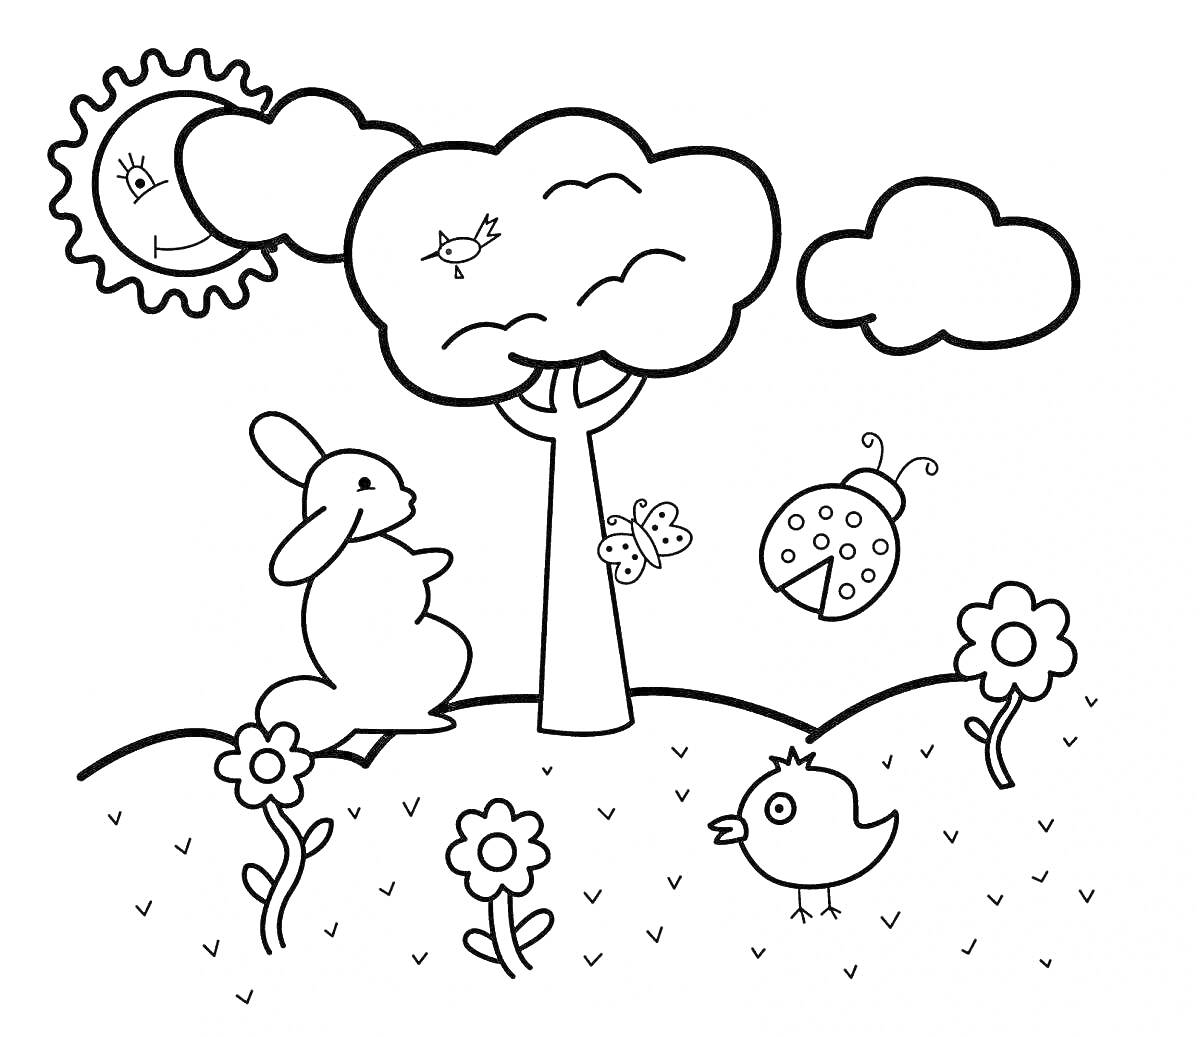 Раскраска Полянка с животными и растениями - солнце, облака, дерево, заяц, бабочка, божья коровка, птичка, цветы